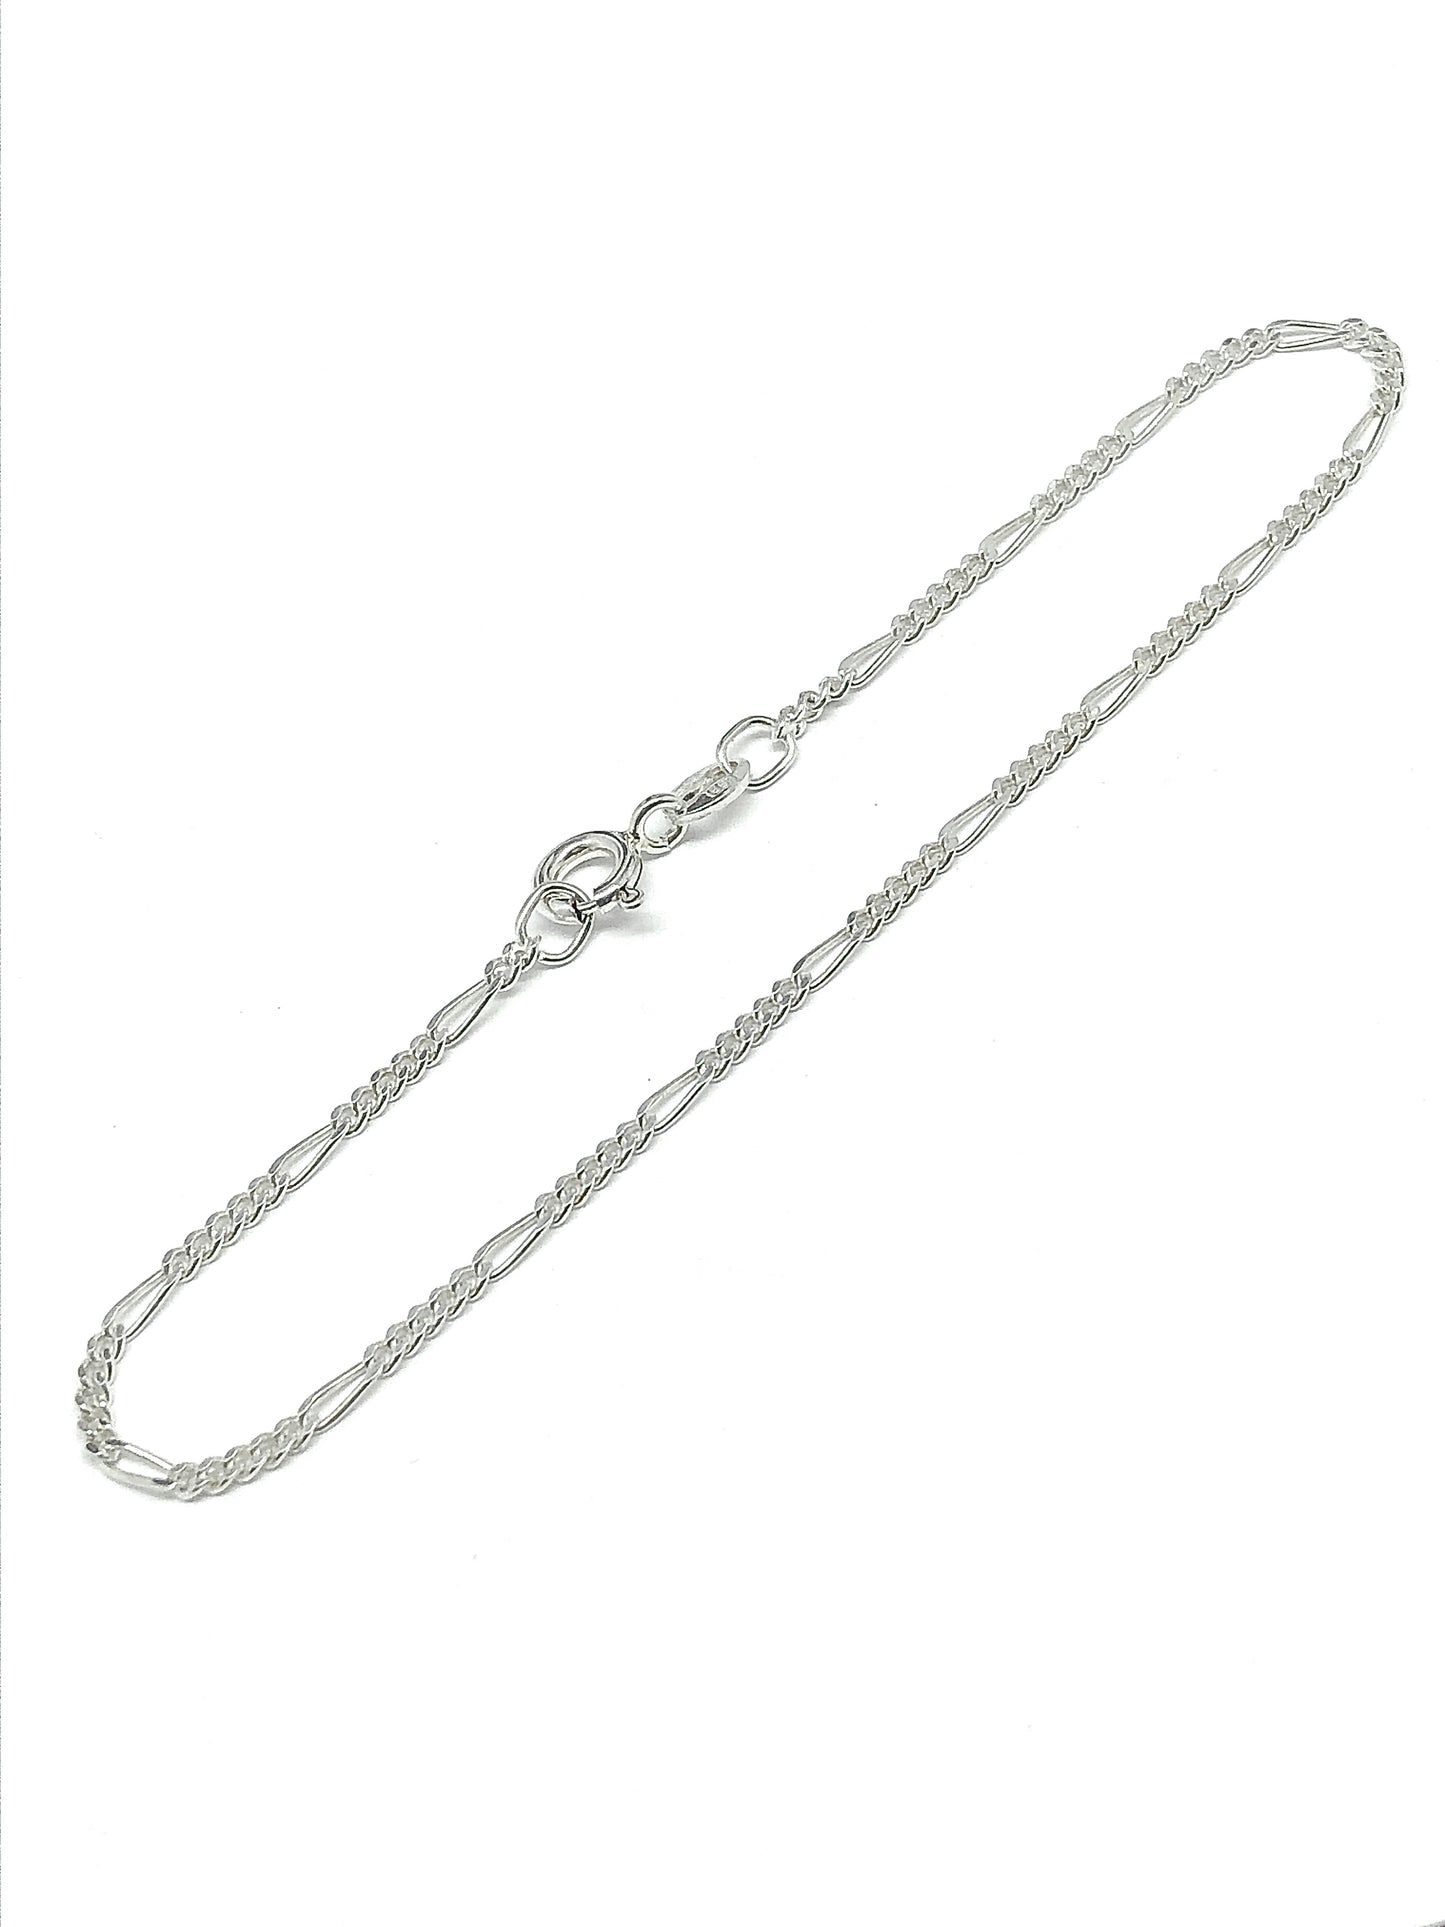 Blingschlingers - 925 Sterling Silver Feminine Style Figaro Chain Bracelet